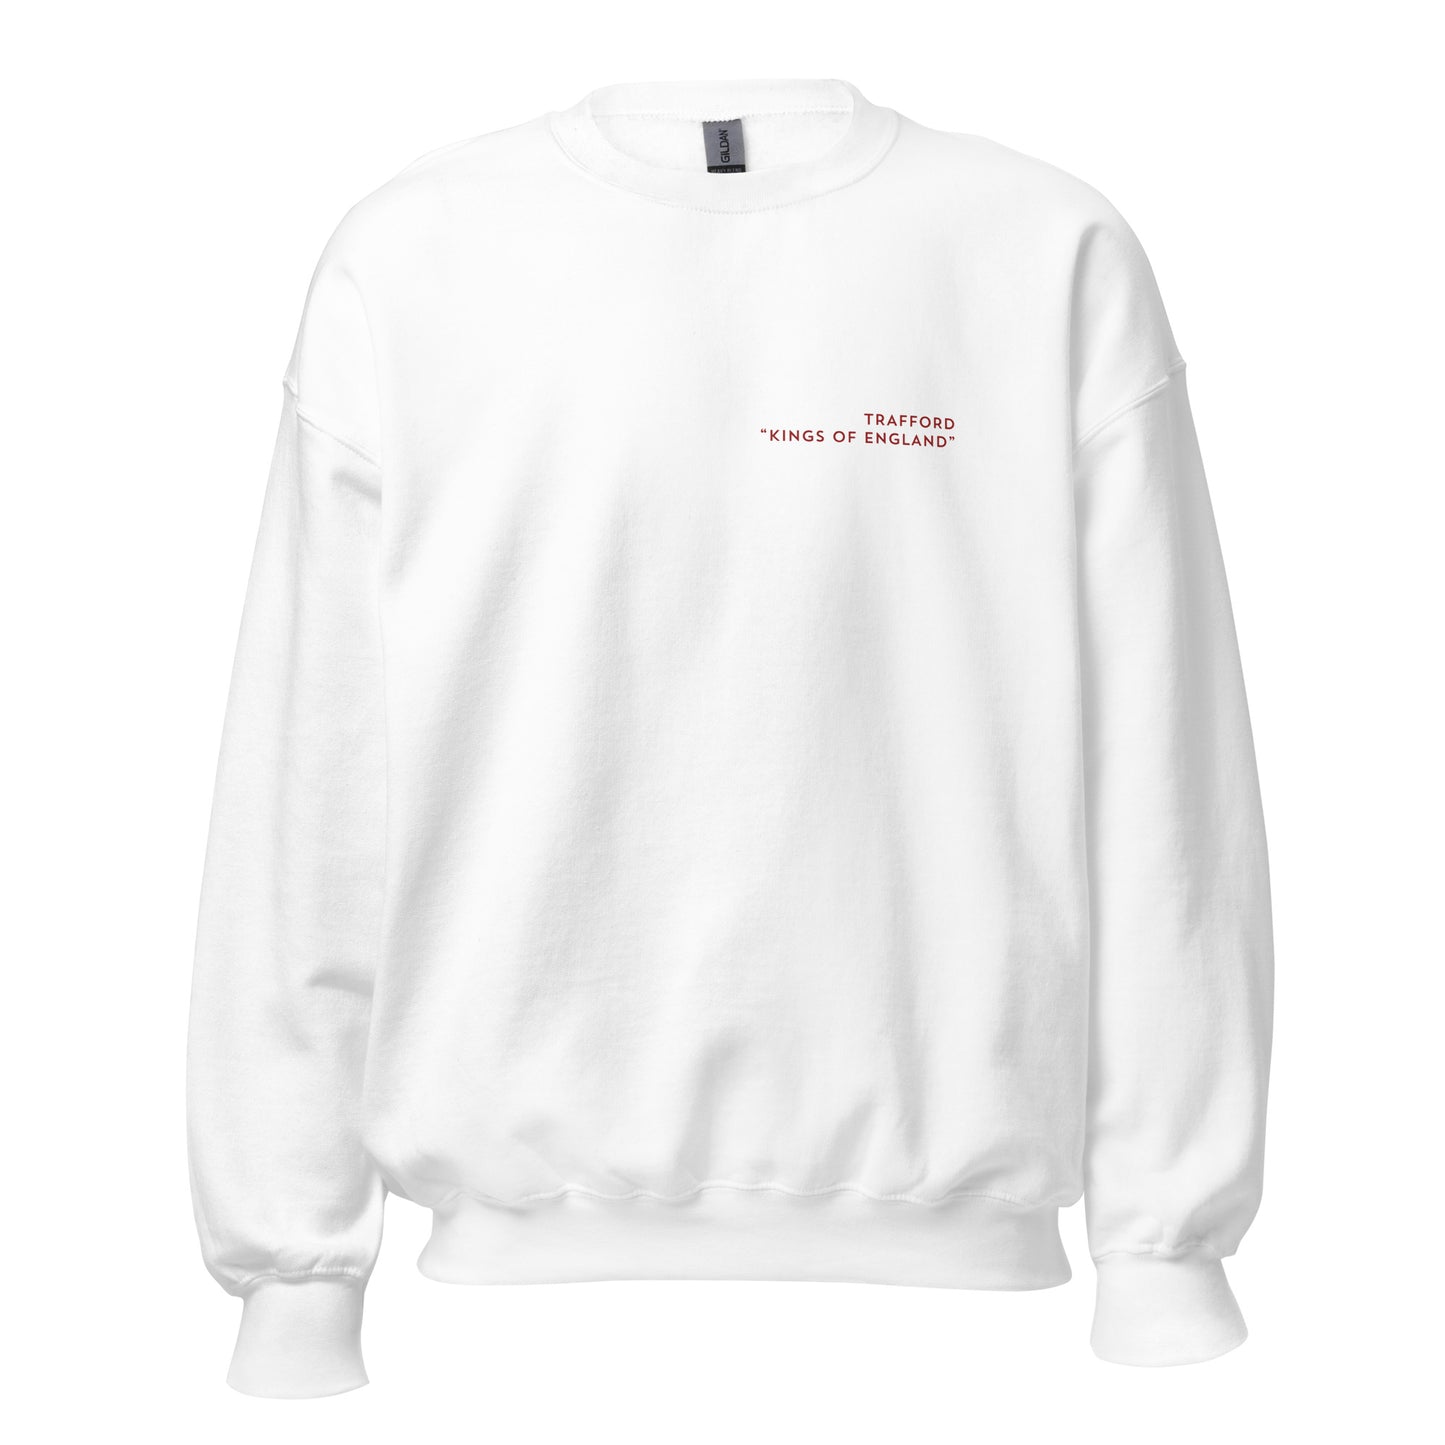 Trafford Modern Sweatshirt